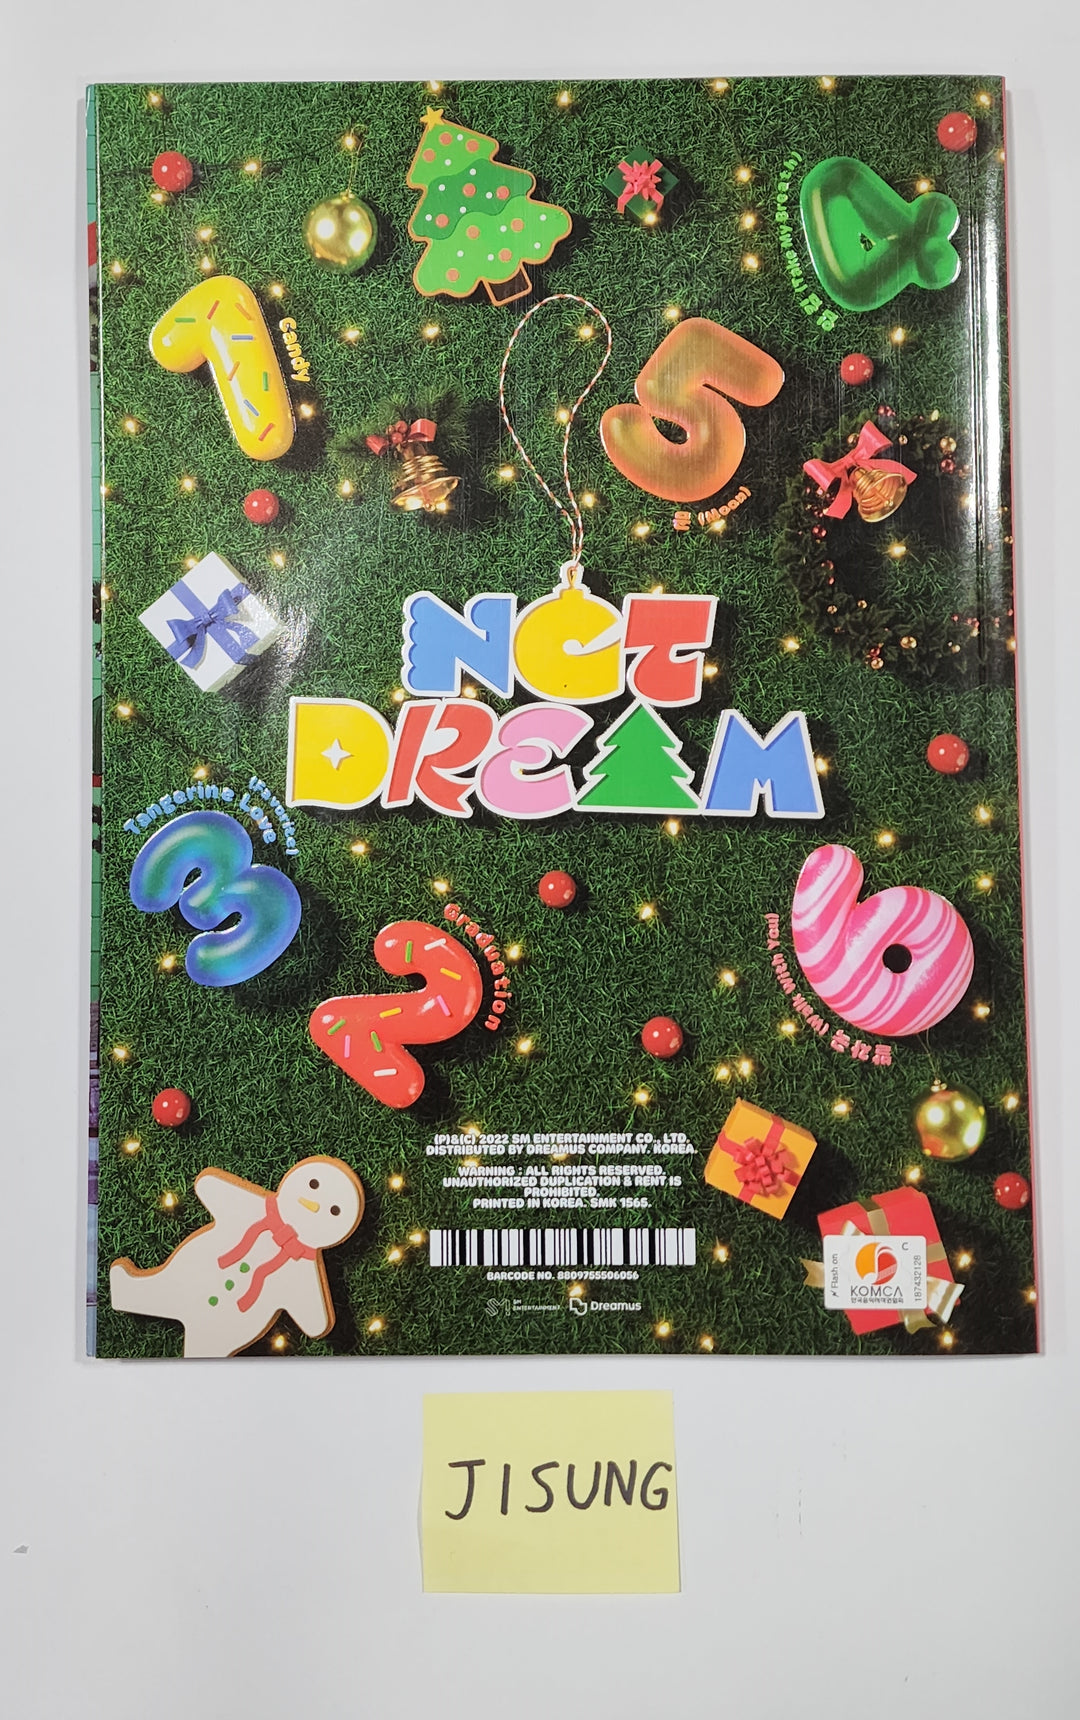 지성 (Of NCT DREAM) "Candy" 겨울 스페셜 미니앨범 - 친필 사인 앨범